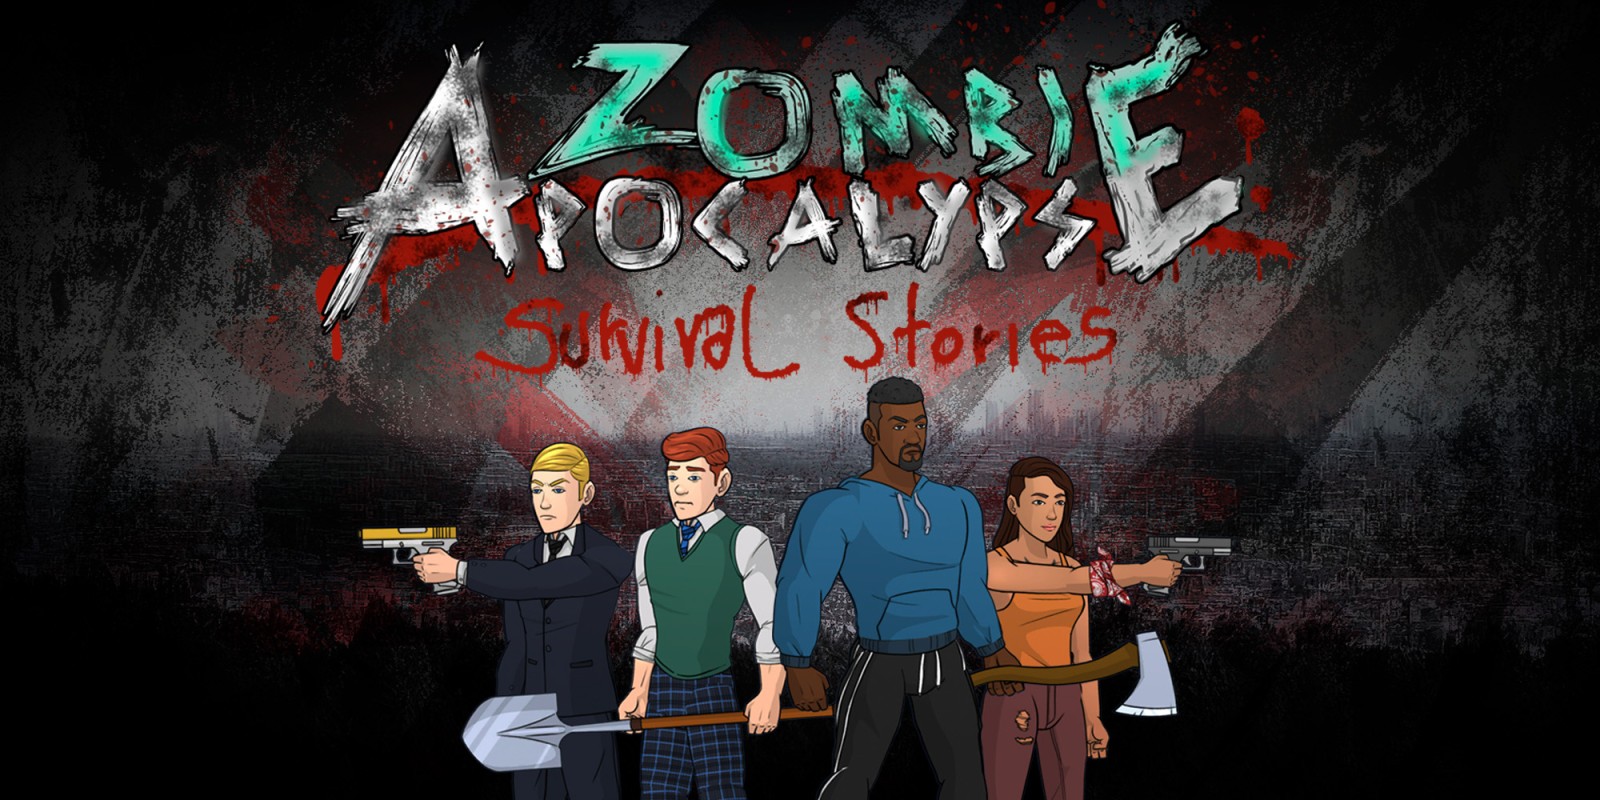 Zombie Apocalypse: Survival Stories